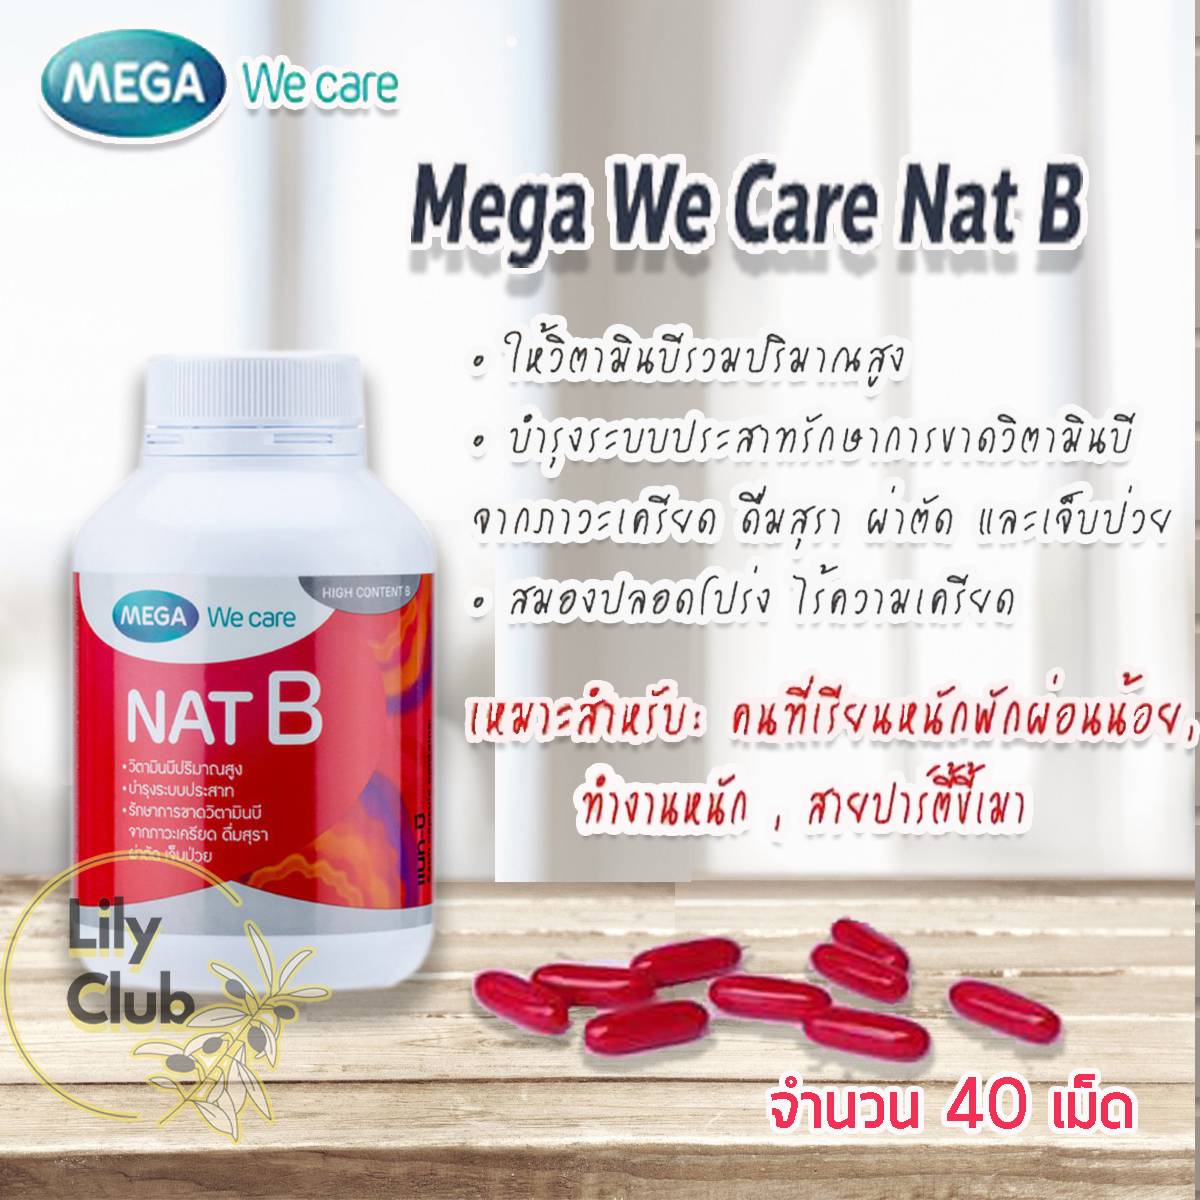 Mega We Care Nat B แนท บี [40 แคปซูล] วิตามิน บี ช่วยให้พลังงาน ผ่อนคลายความเครียด ร่างกายสดชื่น นอนหลับได้ดีขึ้น